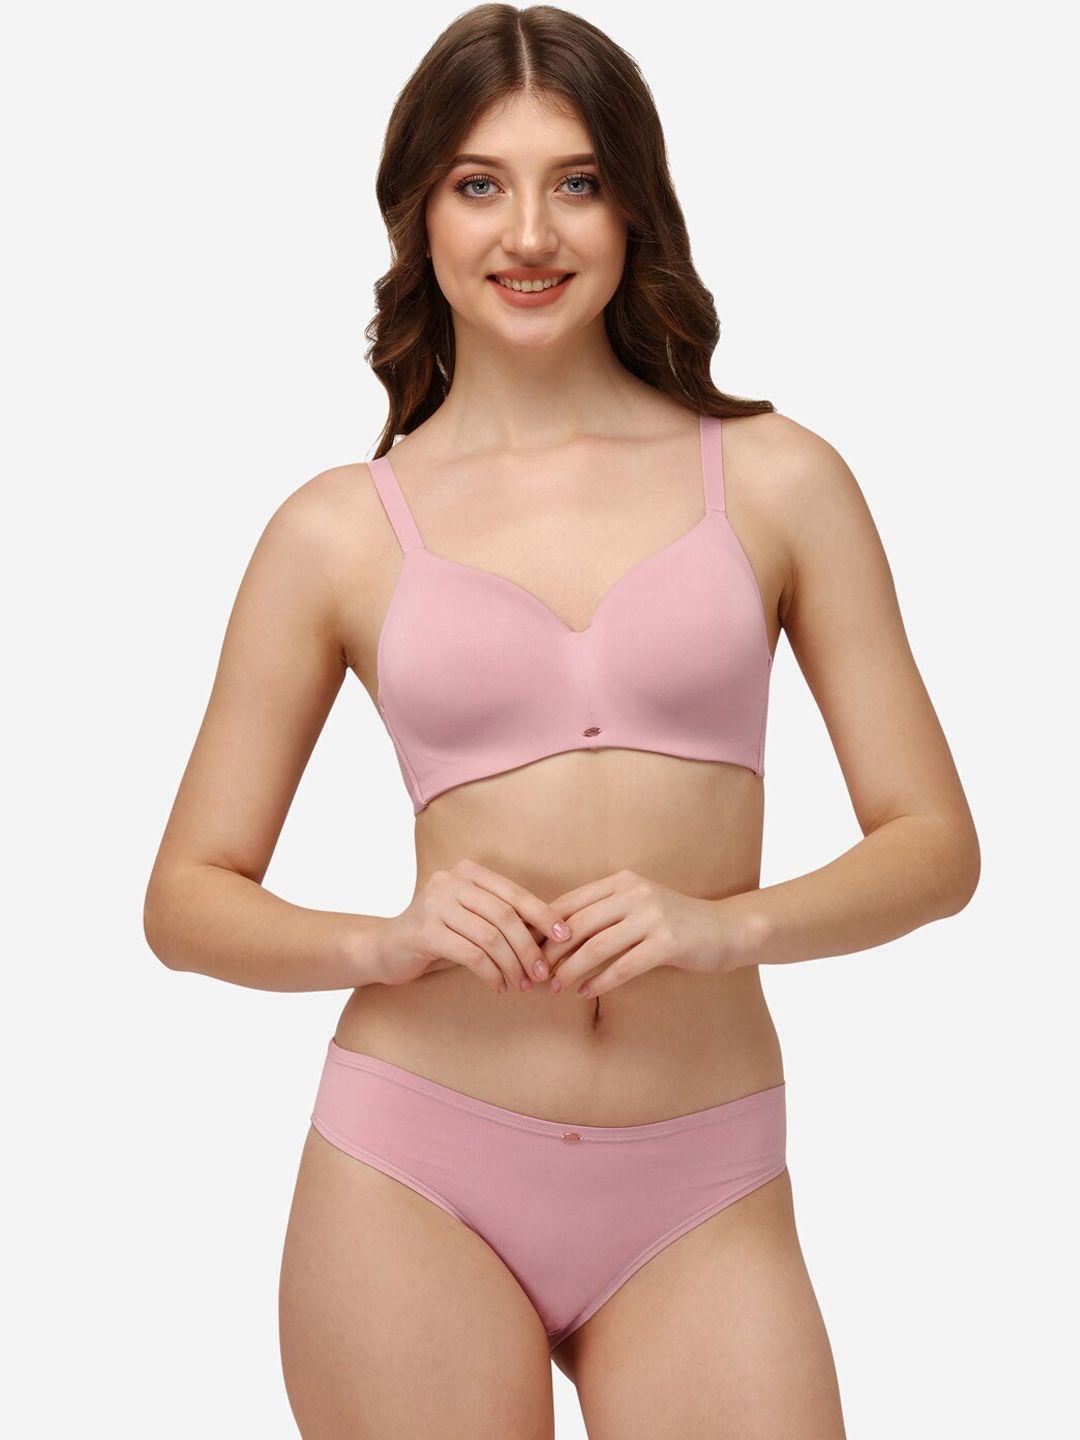 soie-women-pink-solid-lingerie-set-set-cb-129/1130mist